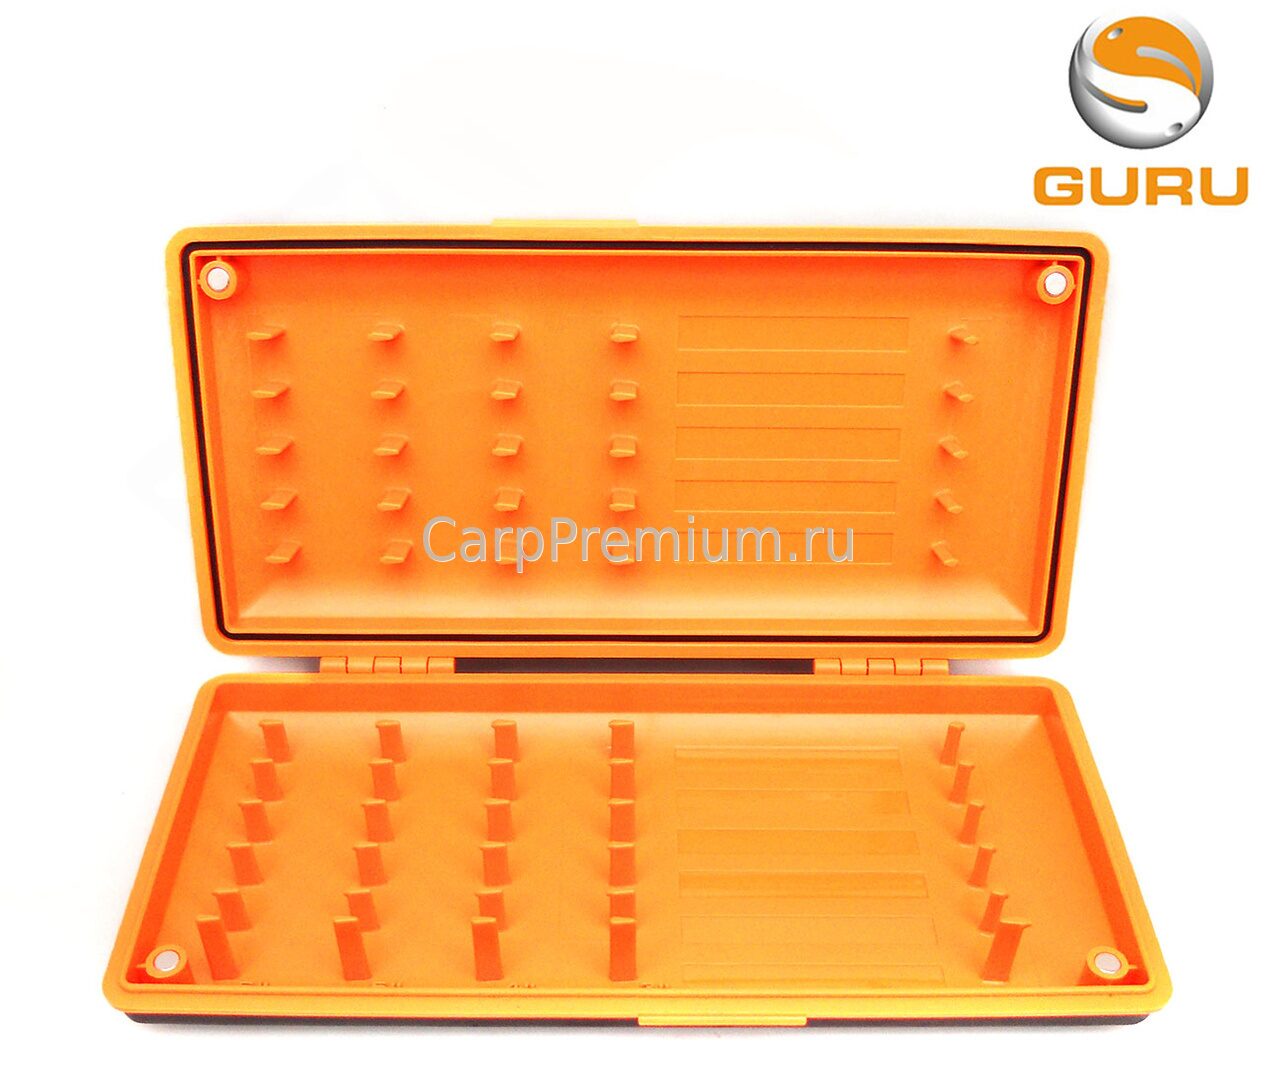 Коробка для поводков Guru (Гуру) - Rig Case